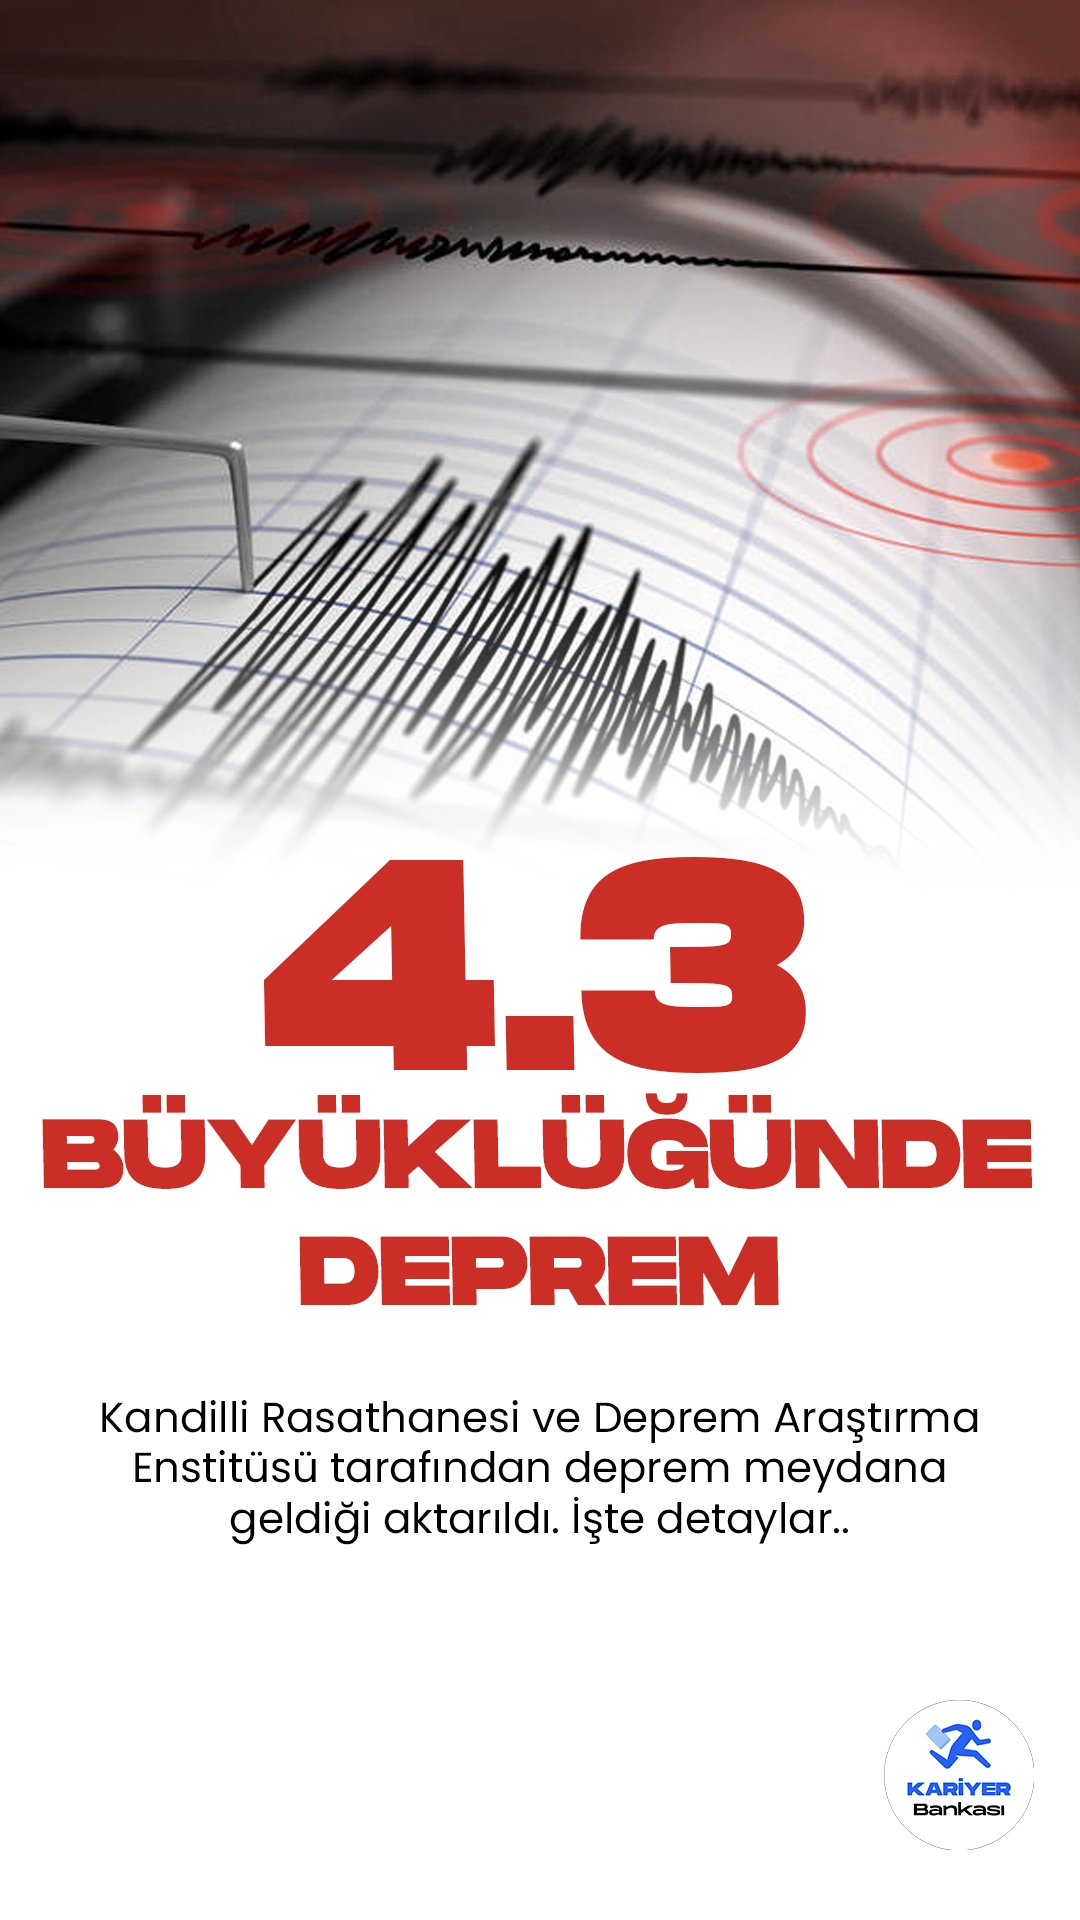 Akdeniz Açıklarında 4.3 Büyüklüğünde Deprem Oldu. Kandilli Rasathanesi ve Deprem Araştırma Enstitüsü tarafından yayımlanan son dakika duyurusunda göre Akdeniz açlarında 4.3 büyüklüğünde deprem meydana geldi.